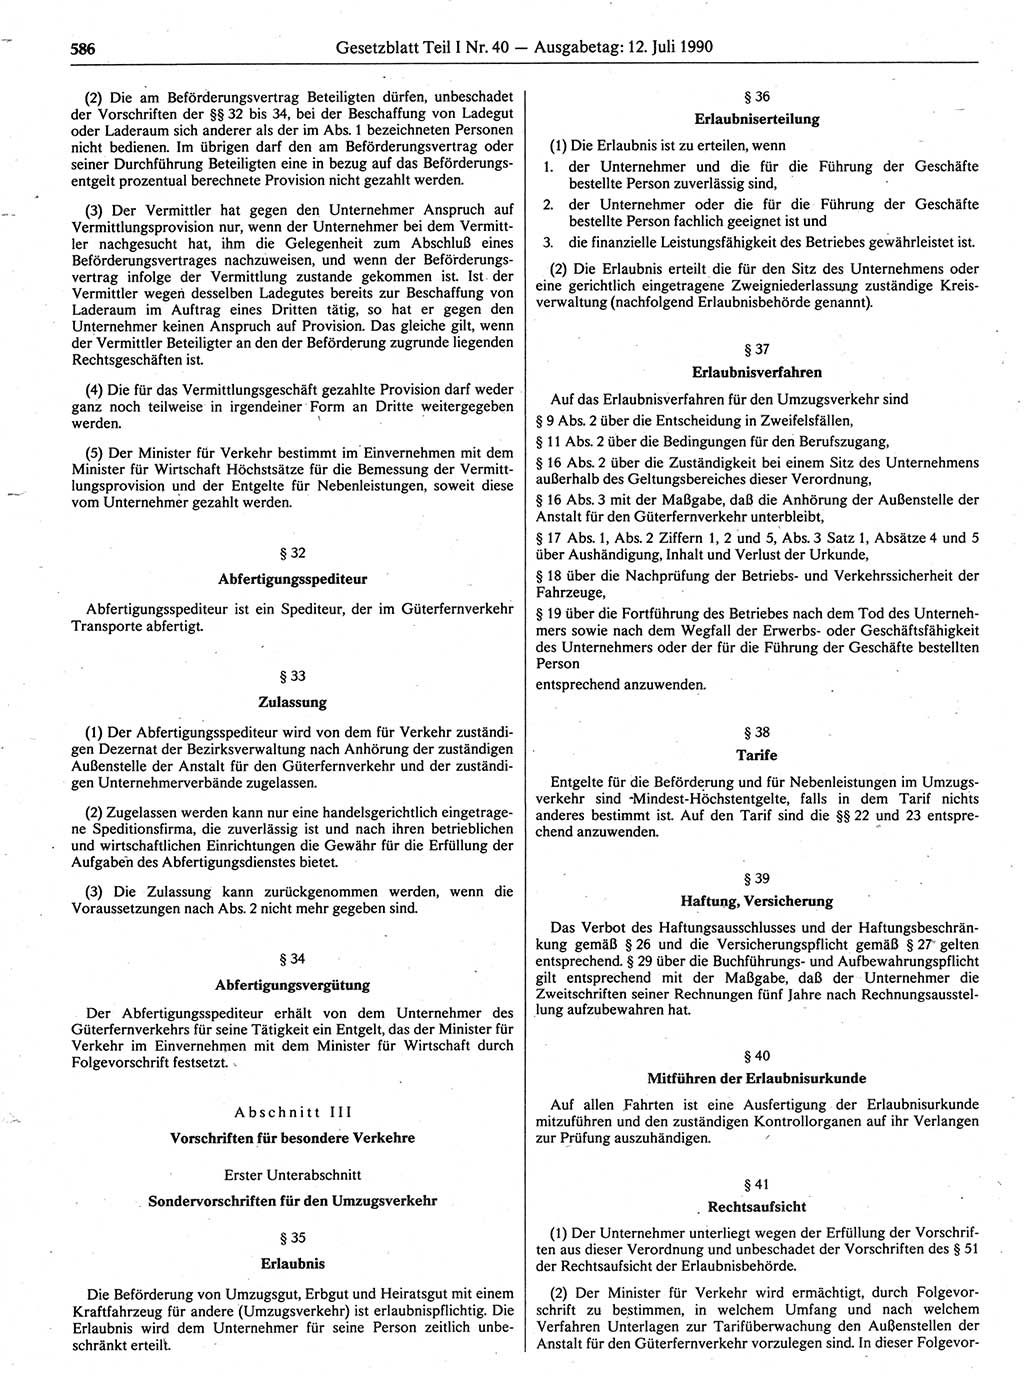 Gesetzblatt (GBl.) der Deutschen Demokratischen Republik (DDR) Teil Ⅰ 1990, Seite 586 (GBl. DDR Ⅰ 1990, S. 586)